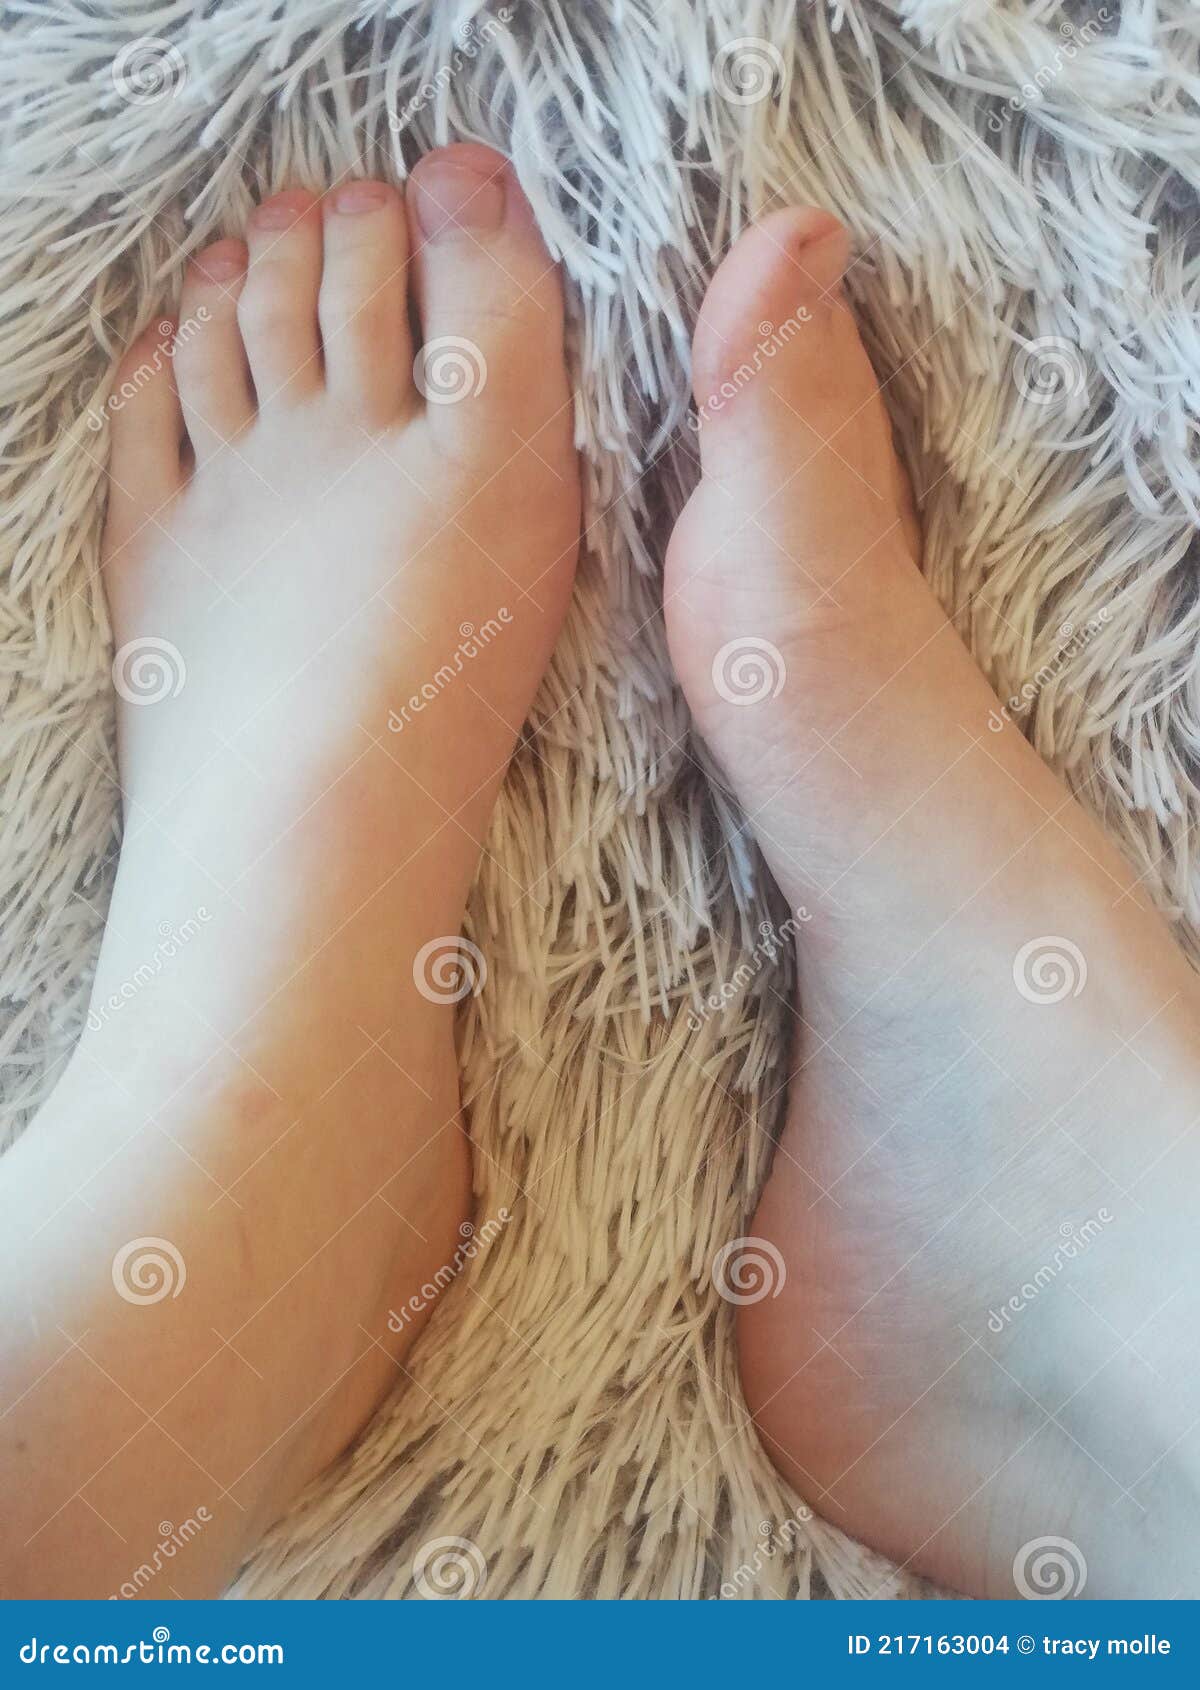 Feet bbw